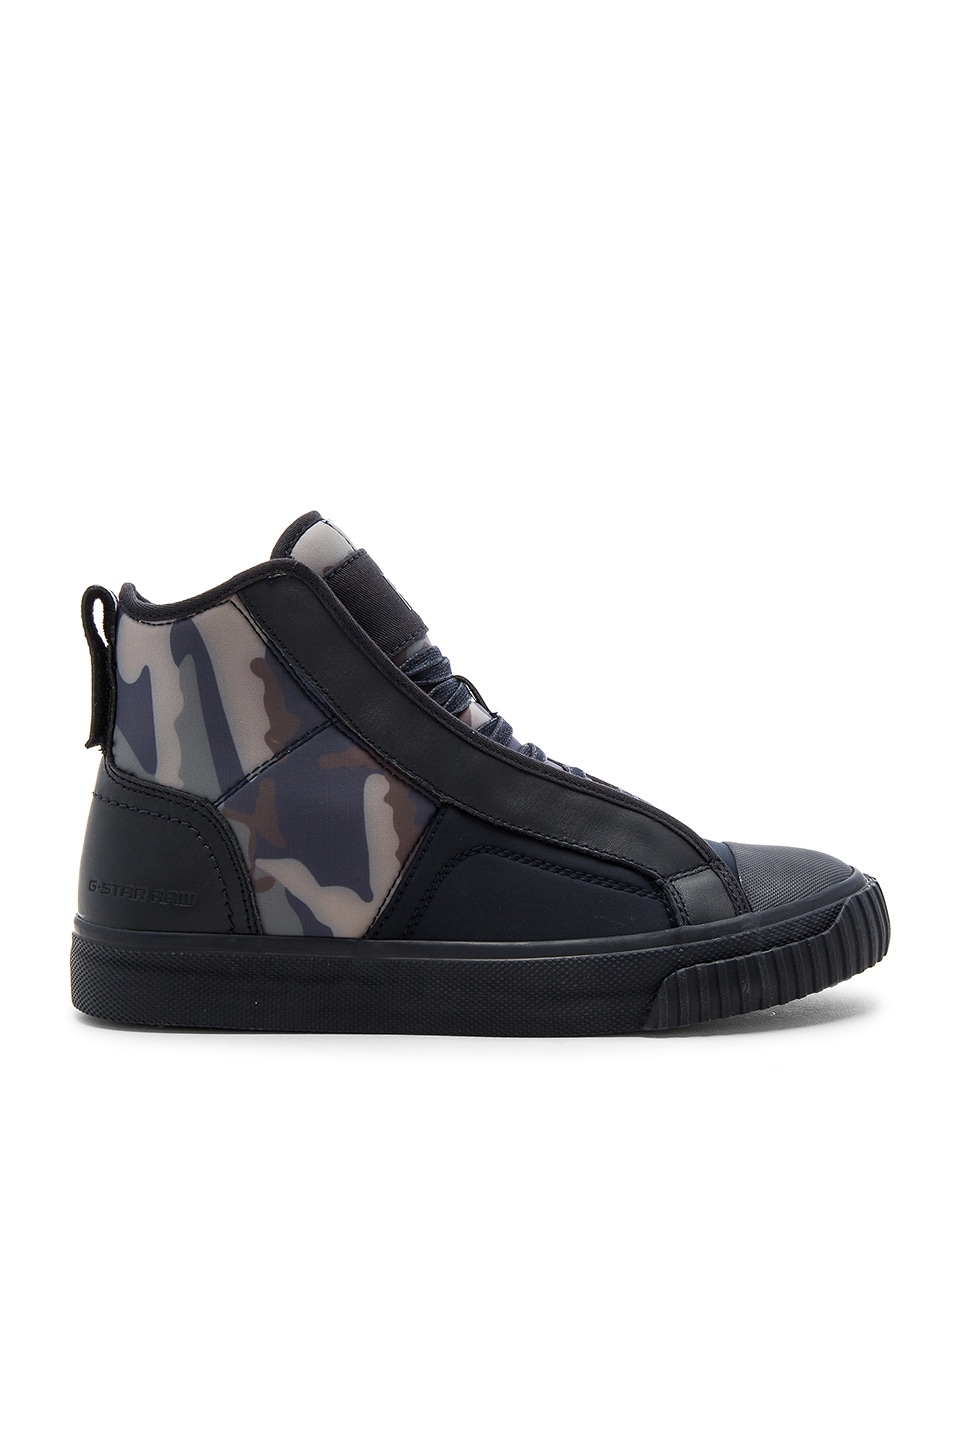 Inferieur regio toonhoogte G-Star Scuba Sneaker in Navy & Print Camo | REVOLVE